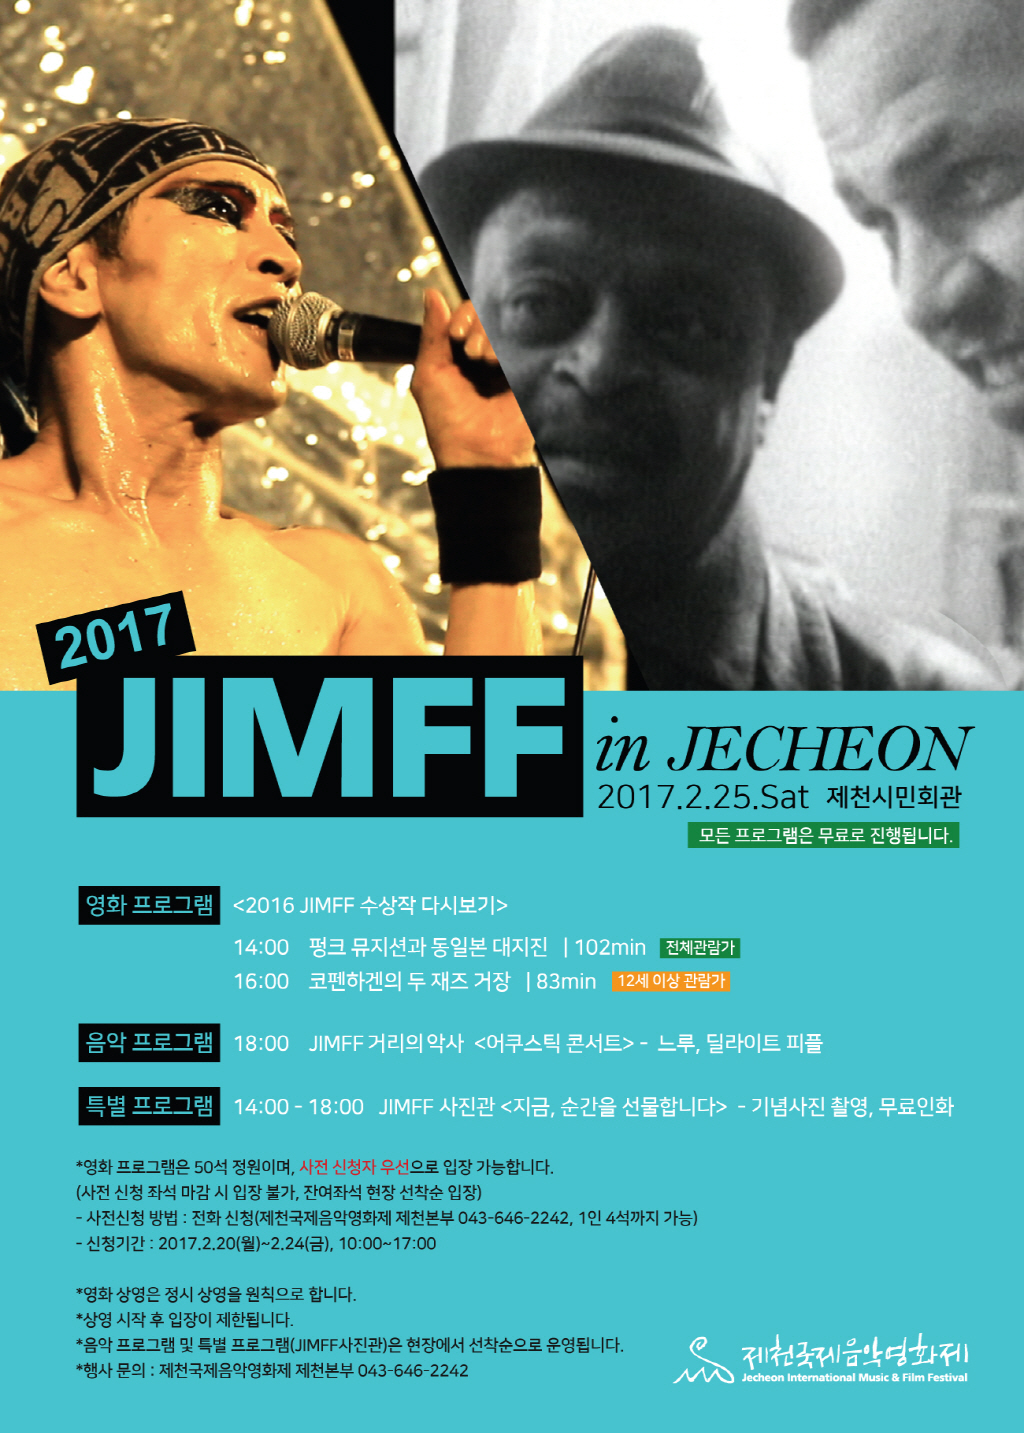 2017 JIMMF in Jecheon 이미지 1